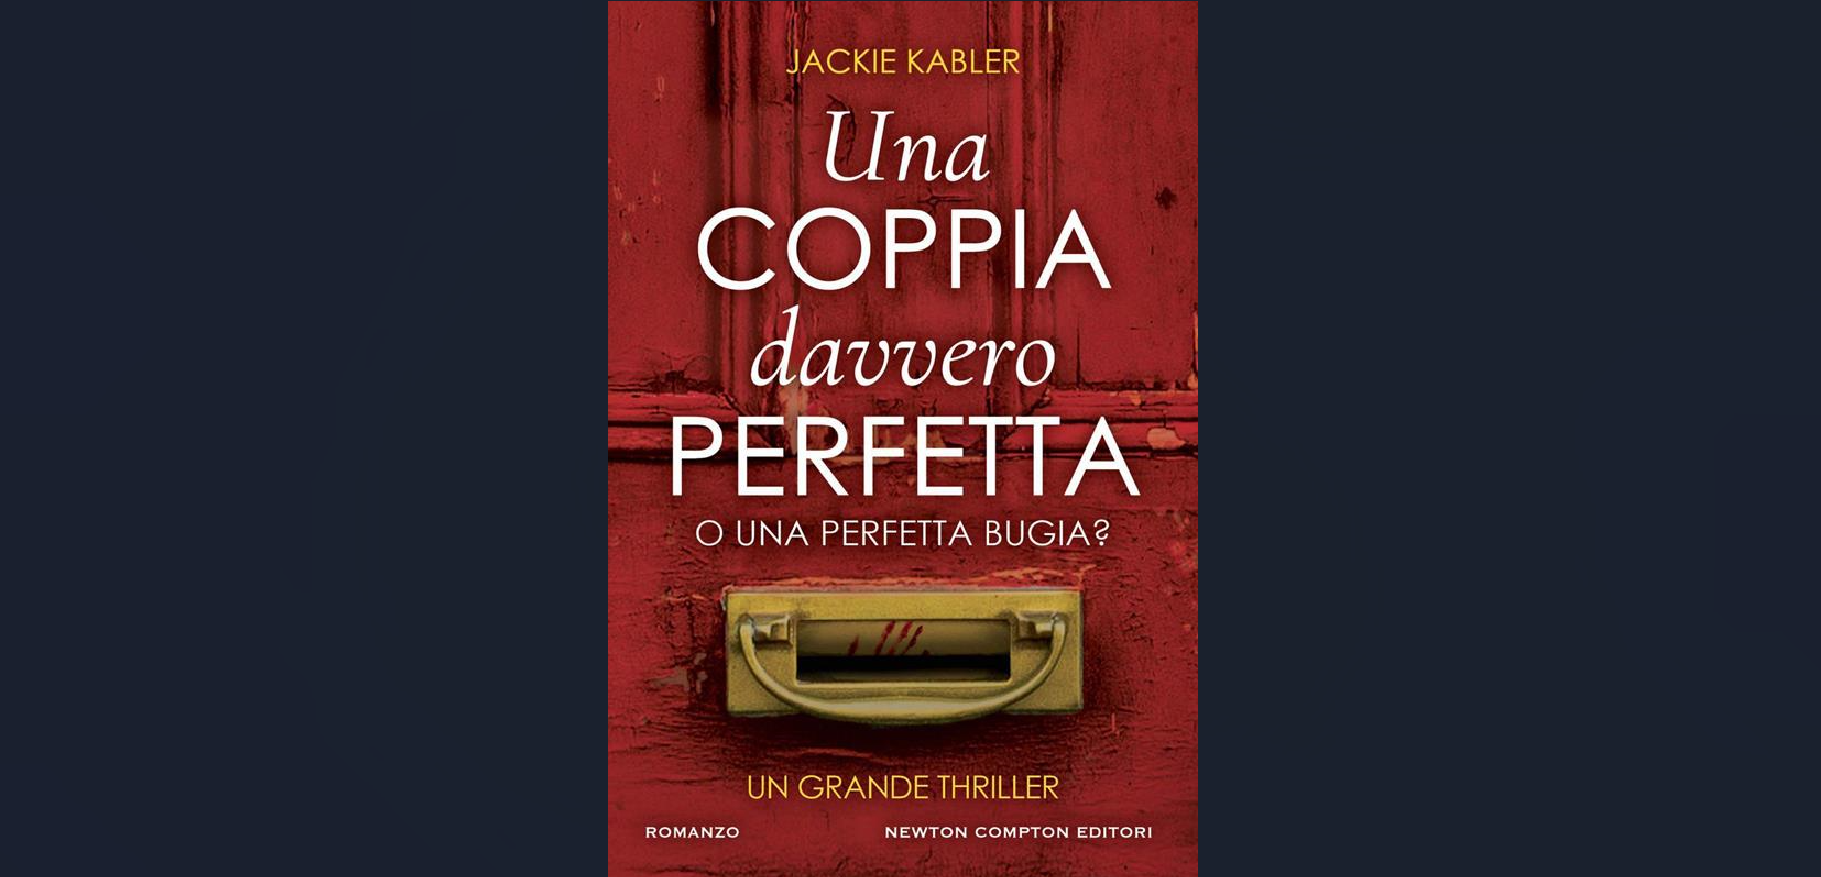 “Una coppia davvero perfetta. O una perfetta bugia?”: il thriller di Jackie Kabler, autrice da un milione di copie